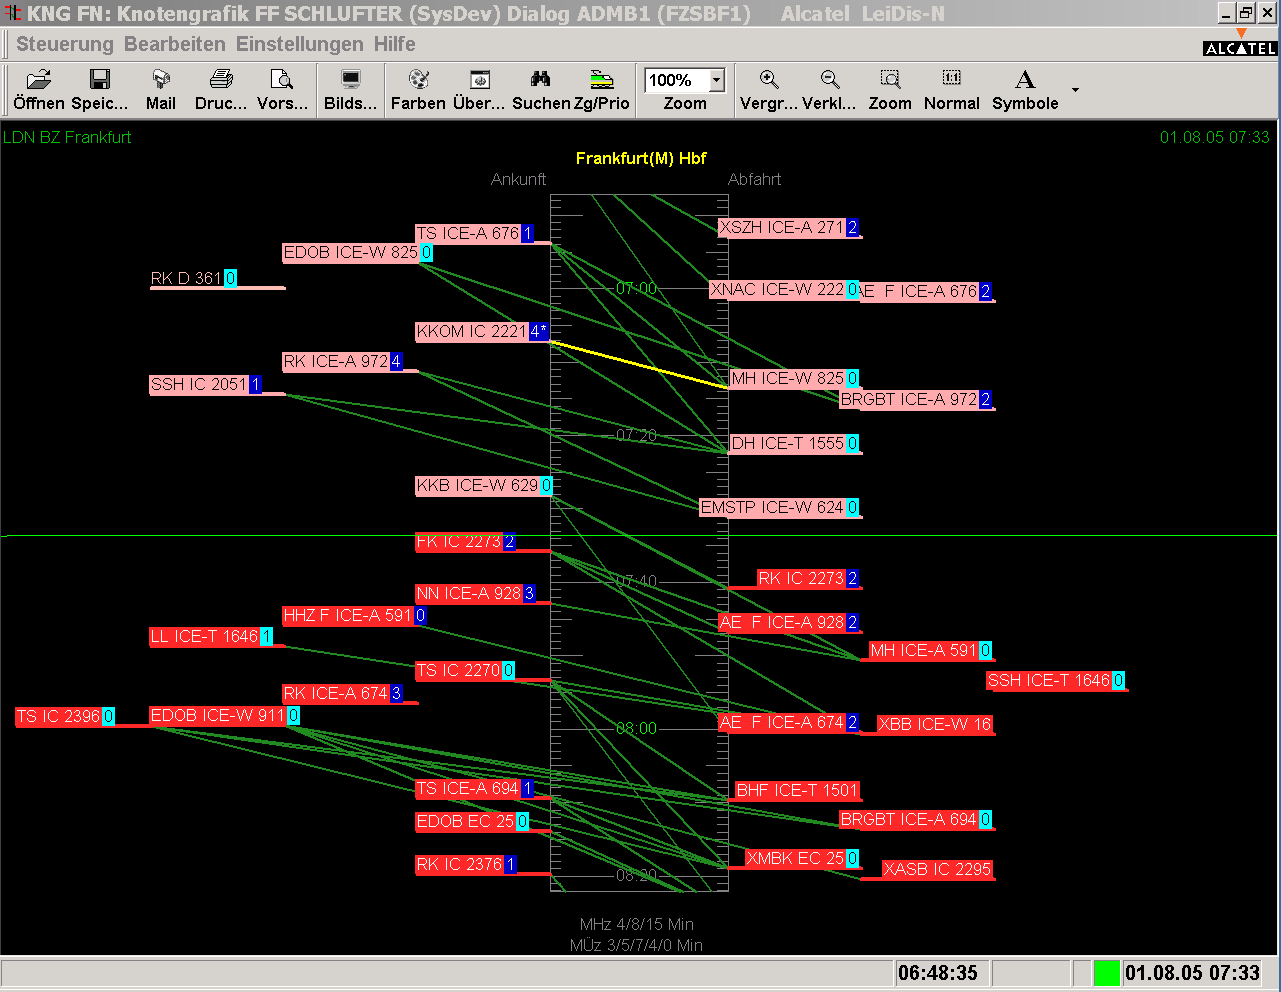 7.3 Knotengrafiken (alle Züge eines Bahnhofs auf einer Zeitachse) In der grafischen Knoteninformation (KNG) werden an einer Zeitachse (Bahnhofsleiste) Züge für definierbare Haltebahnhöfe mit Ihrer